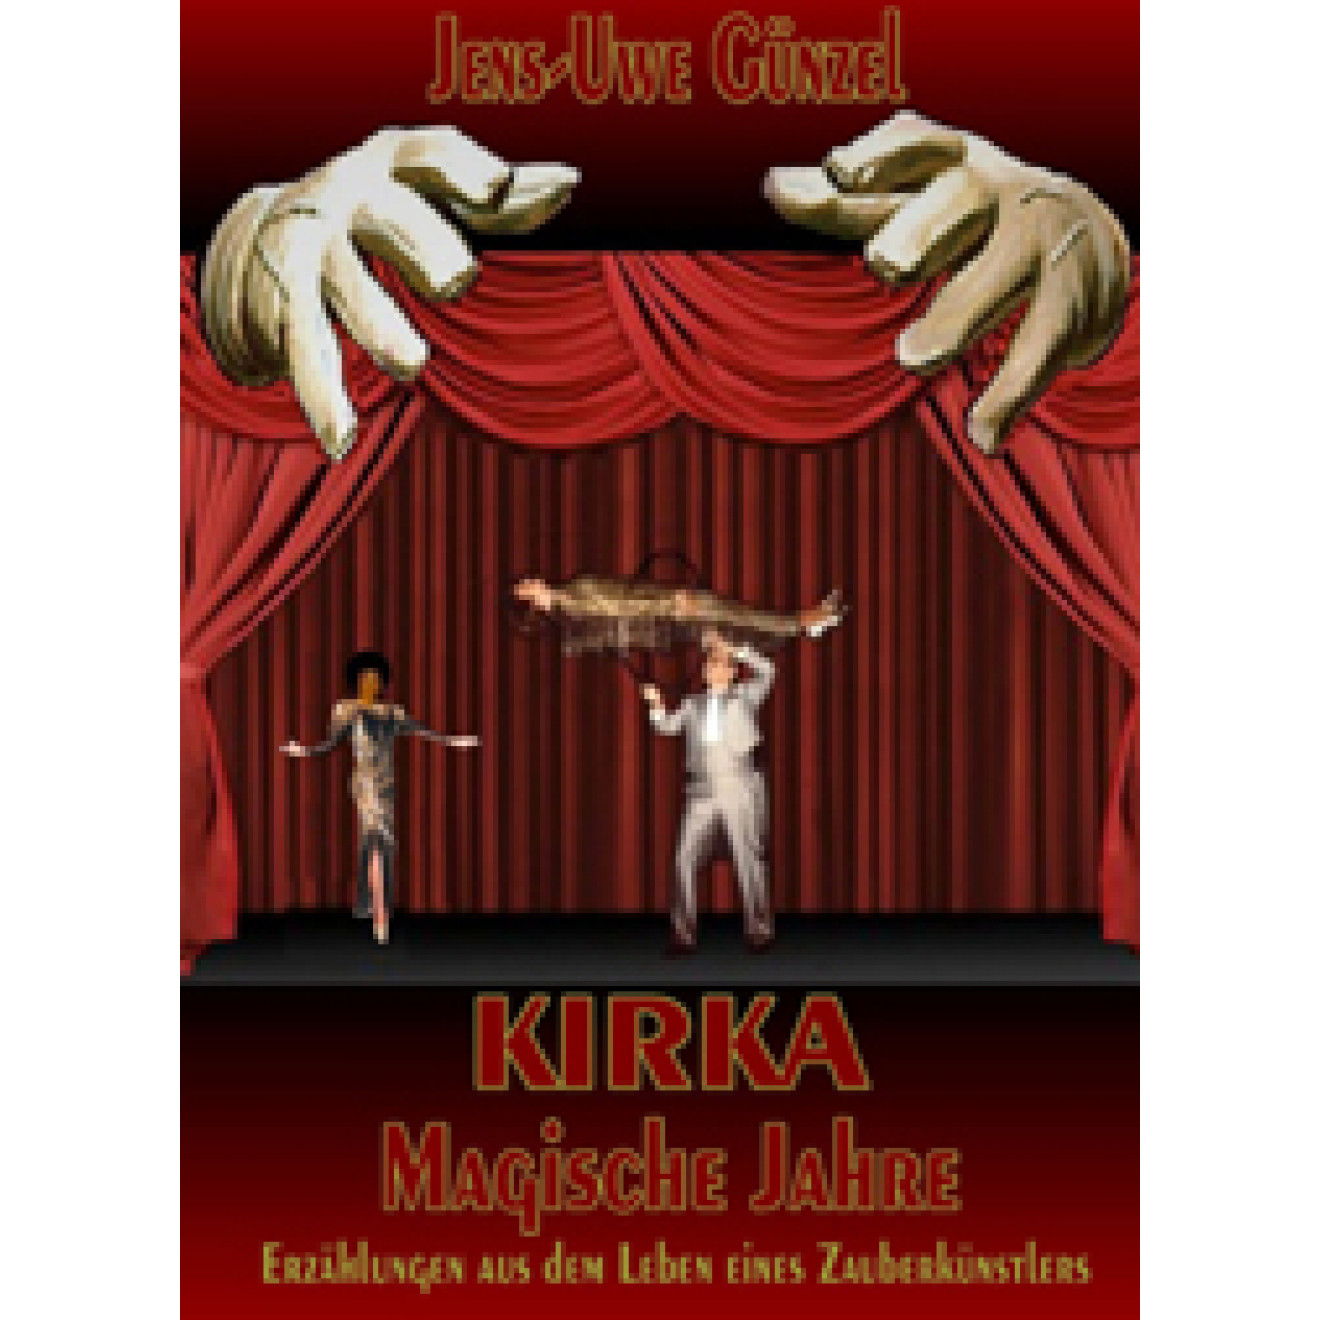 Kirka - Magische Jahre, Erzählungen eines Zauberkünstlers